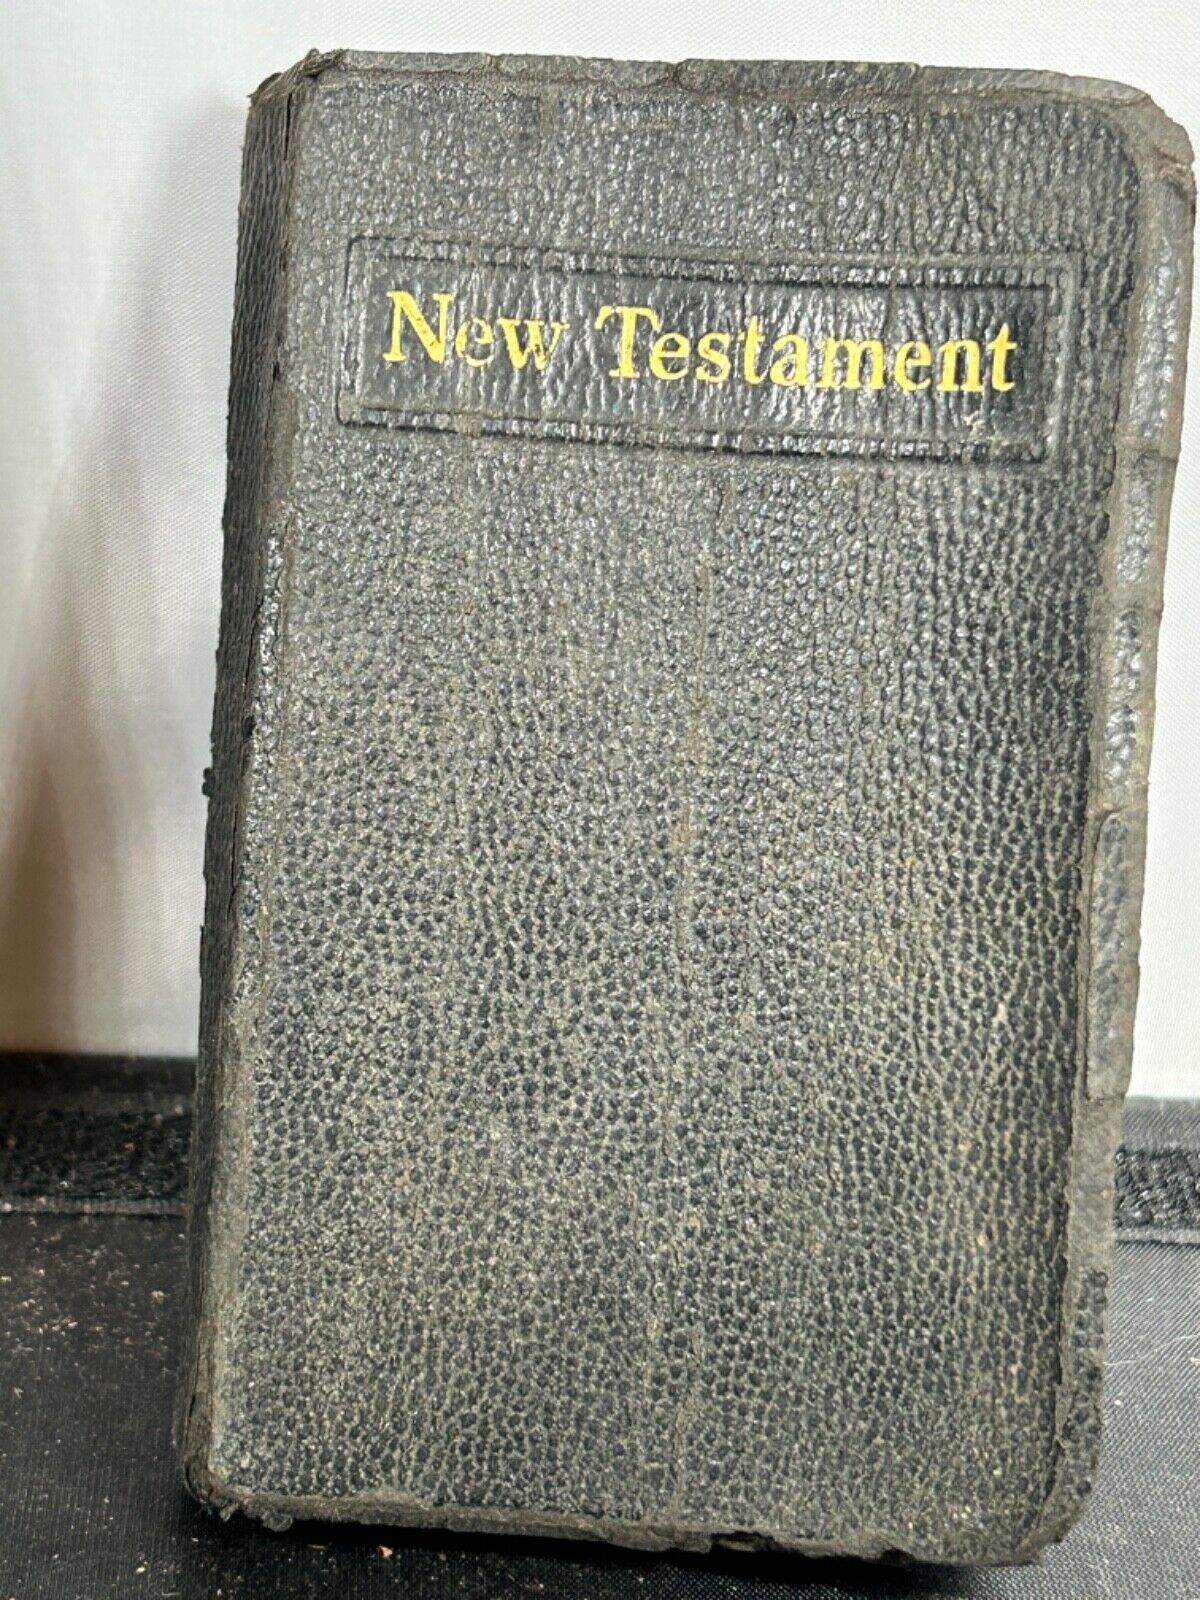 vtg WWII soldier new testament pocket bible signed by pres roosevelt 4055Z